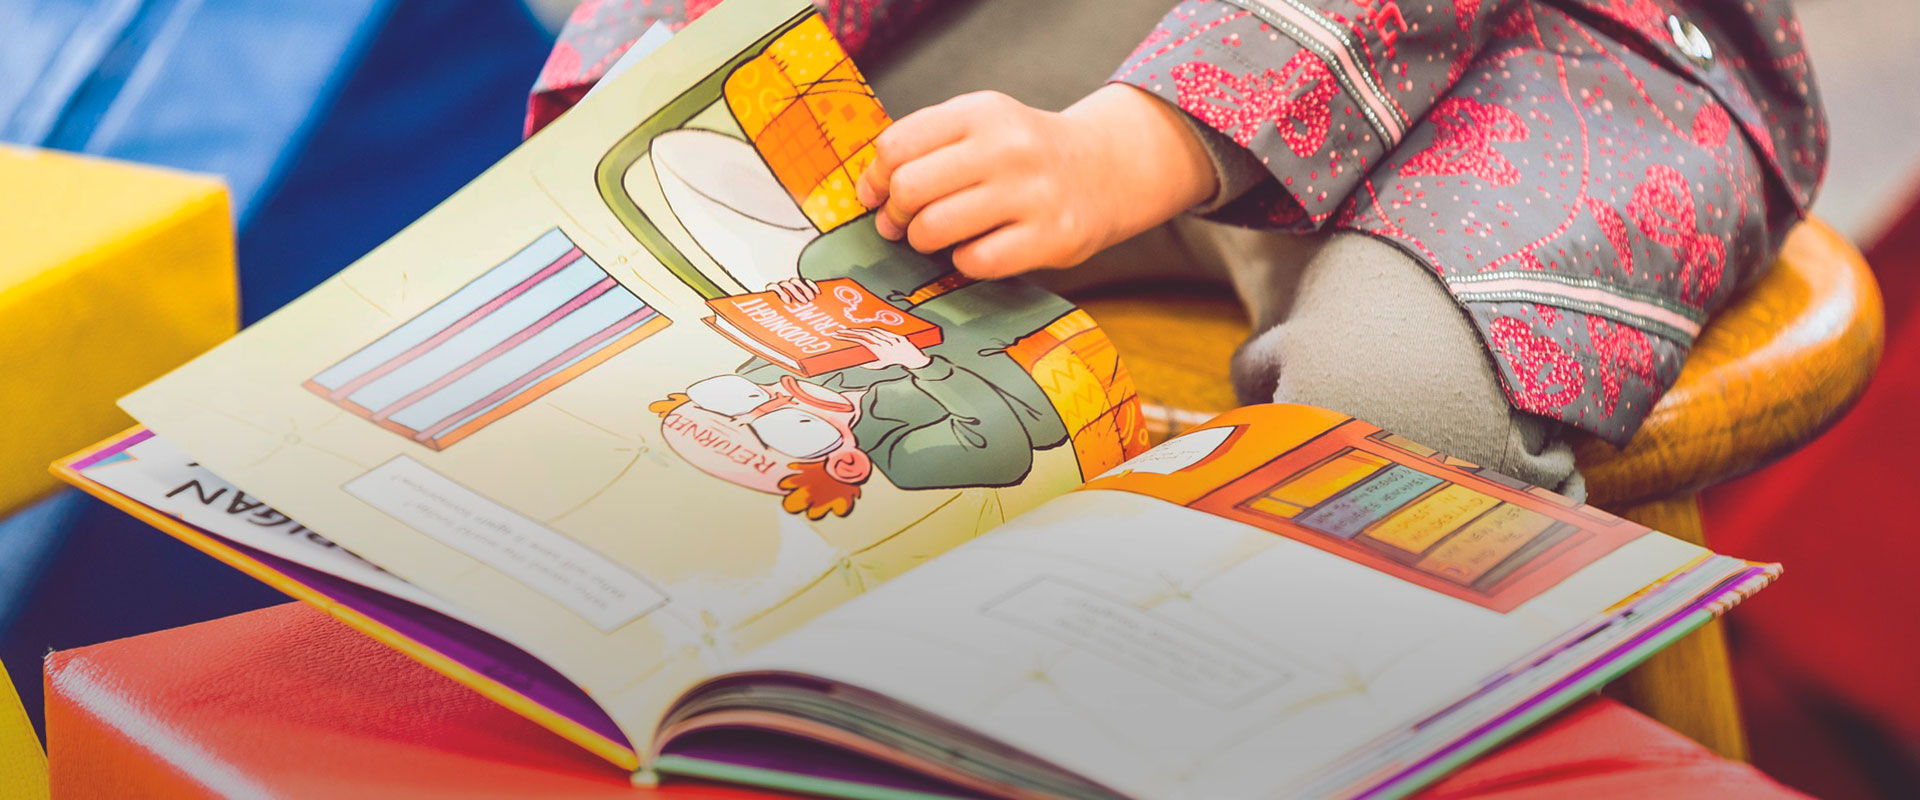 ¿Por qué es importante la lectura en los niños?